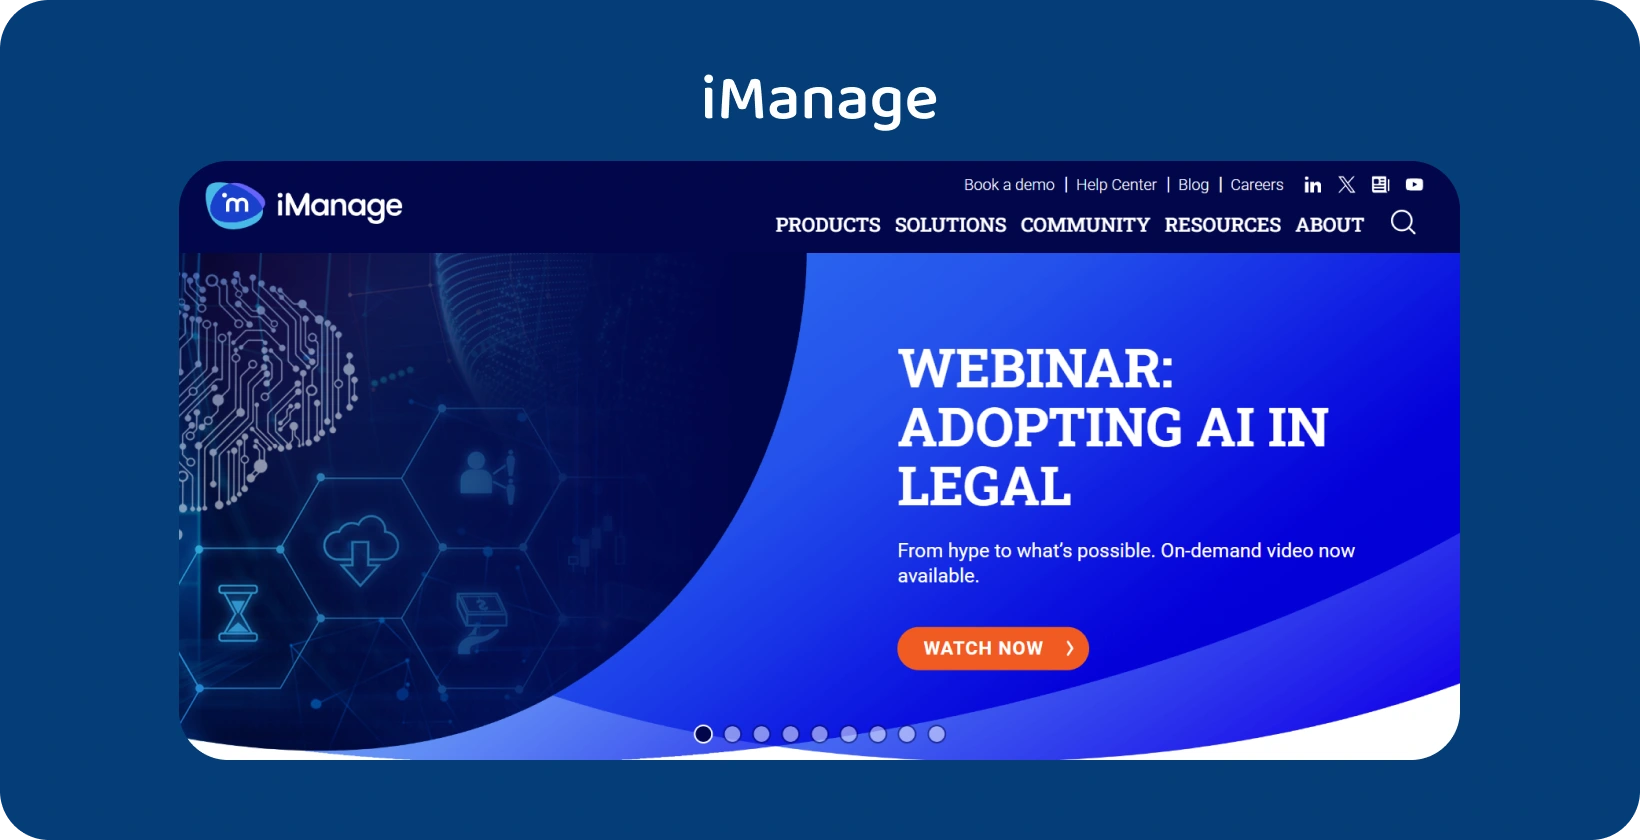 Piattaforma iManage che migliora la sofisticata gestione dei record legali e i processi di automazione senza soluzione di continuità.